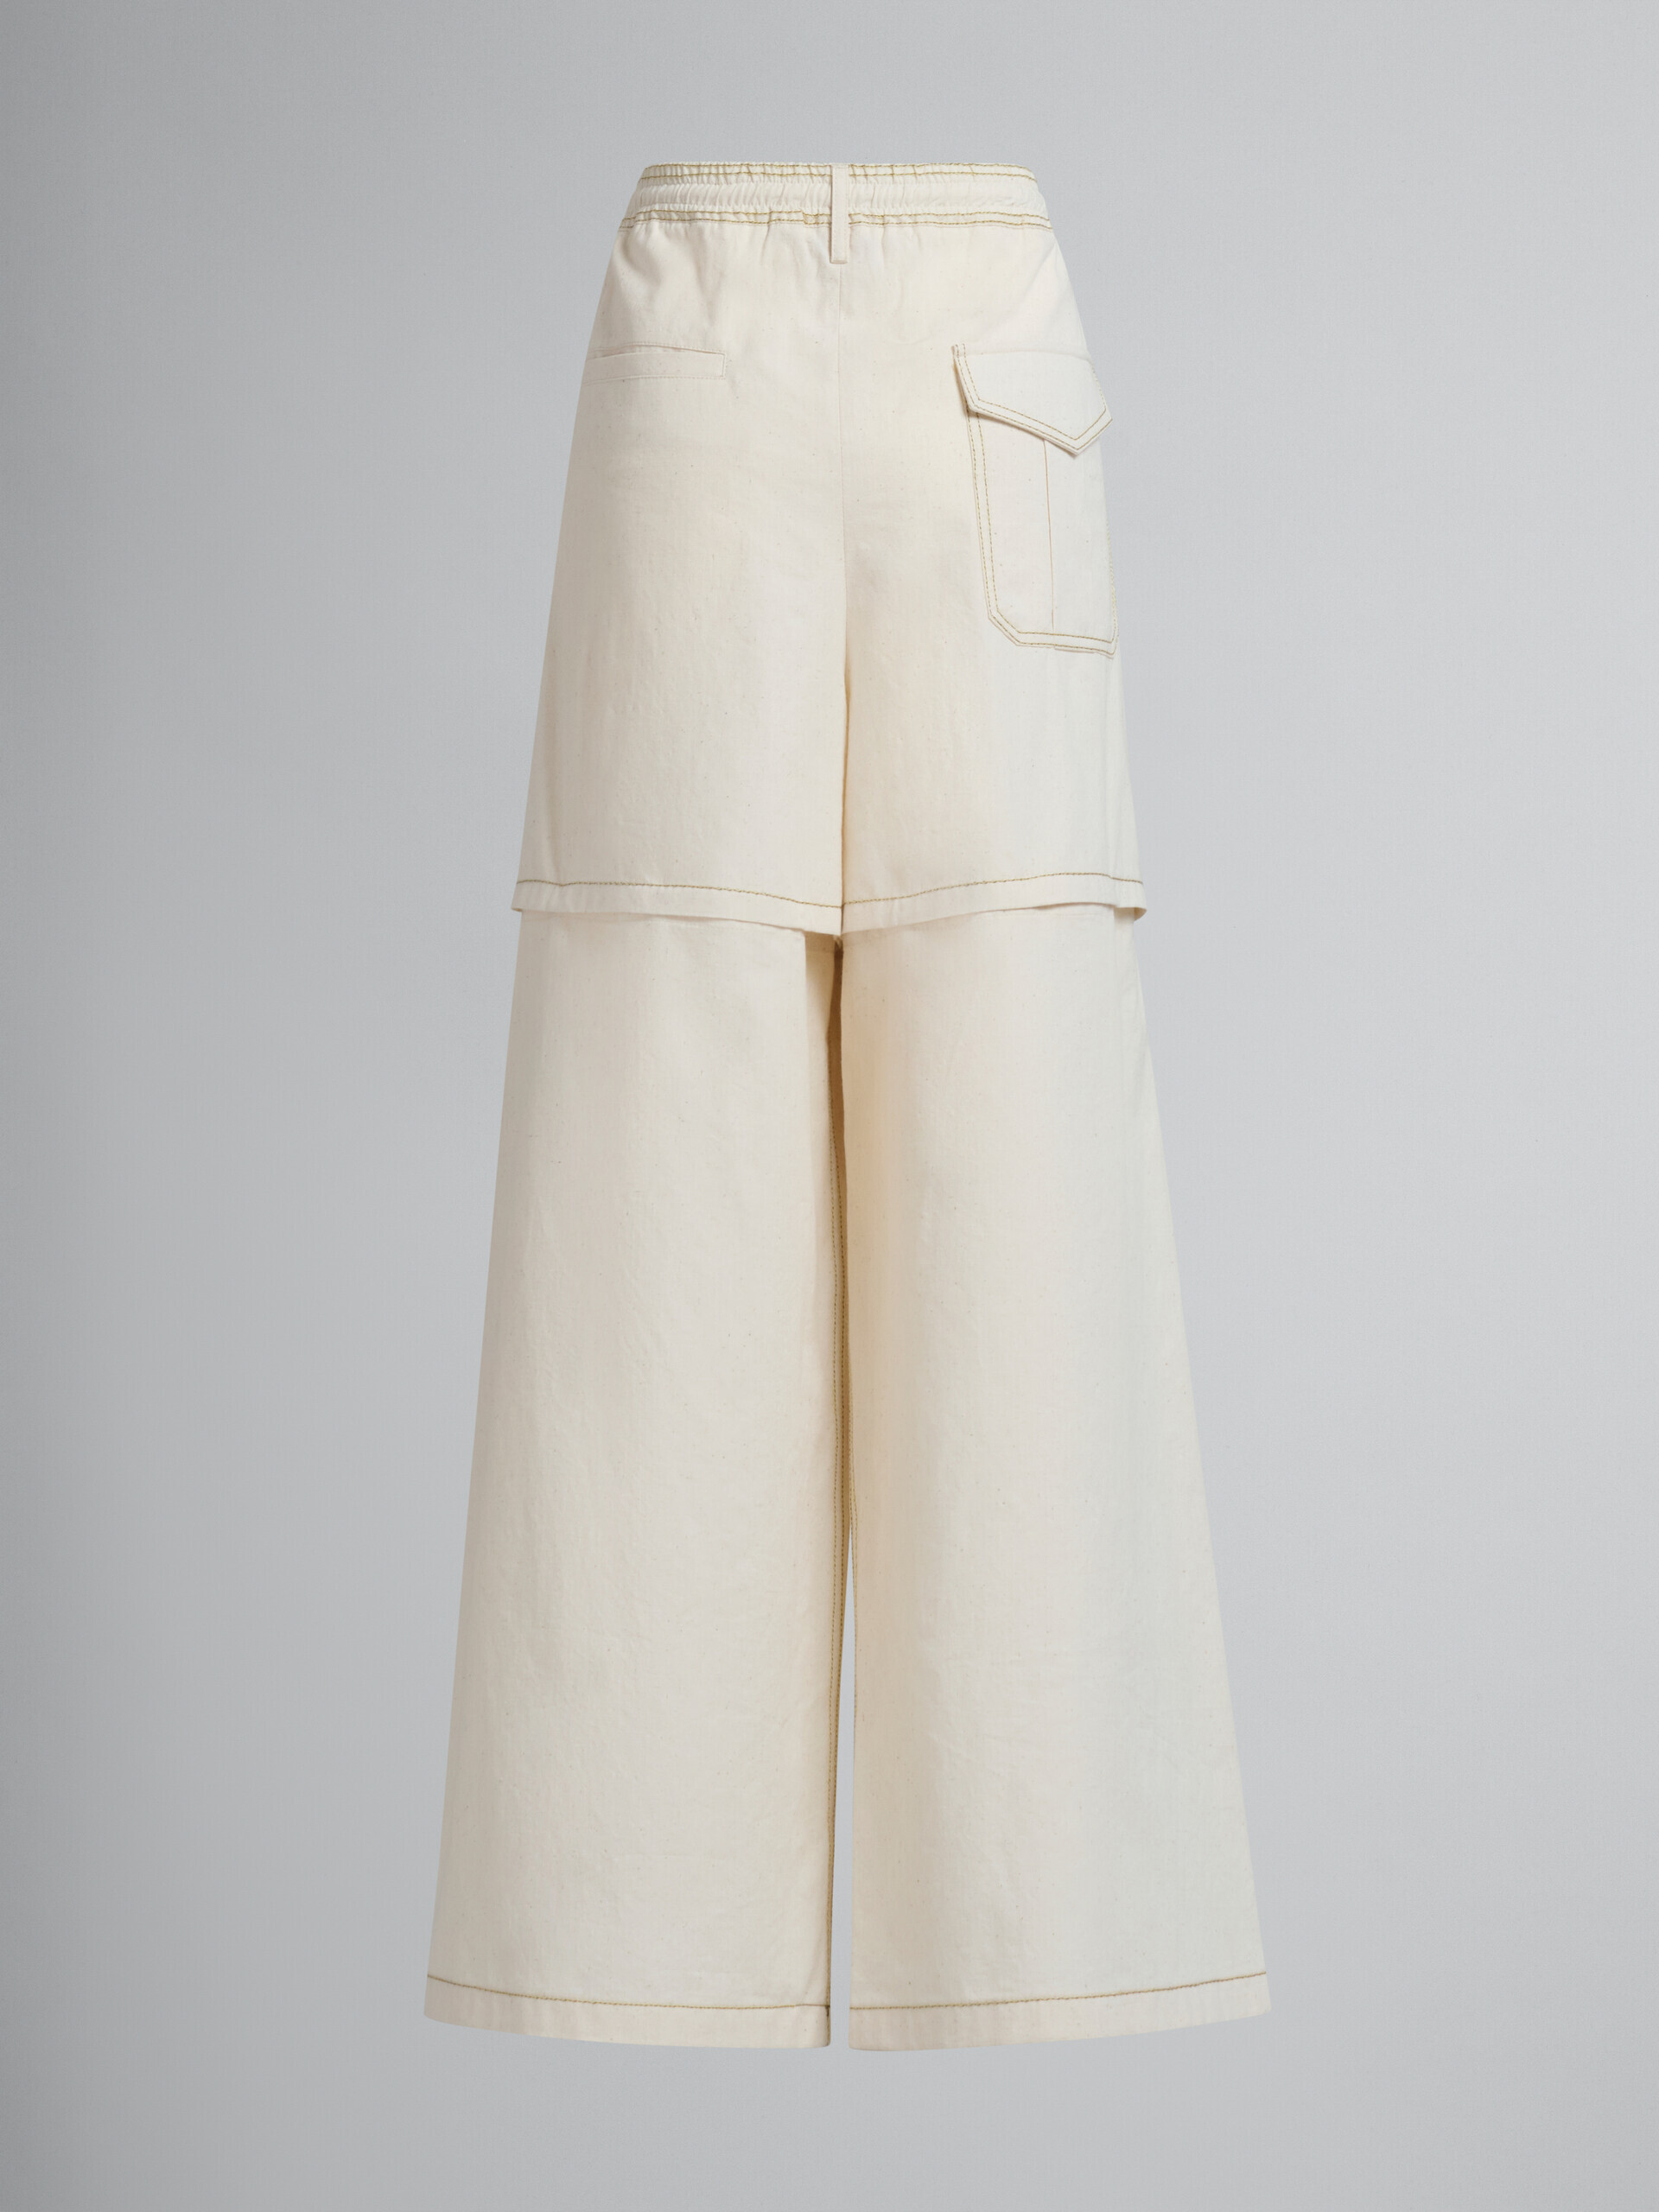 Pantalon cargo Marni en toile de coton organique beige clair avec surpiqûres - Pantalons - Image 3